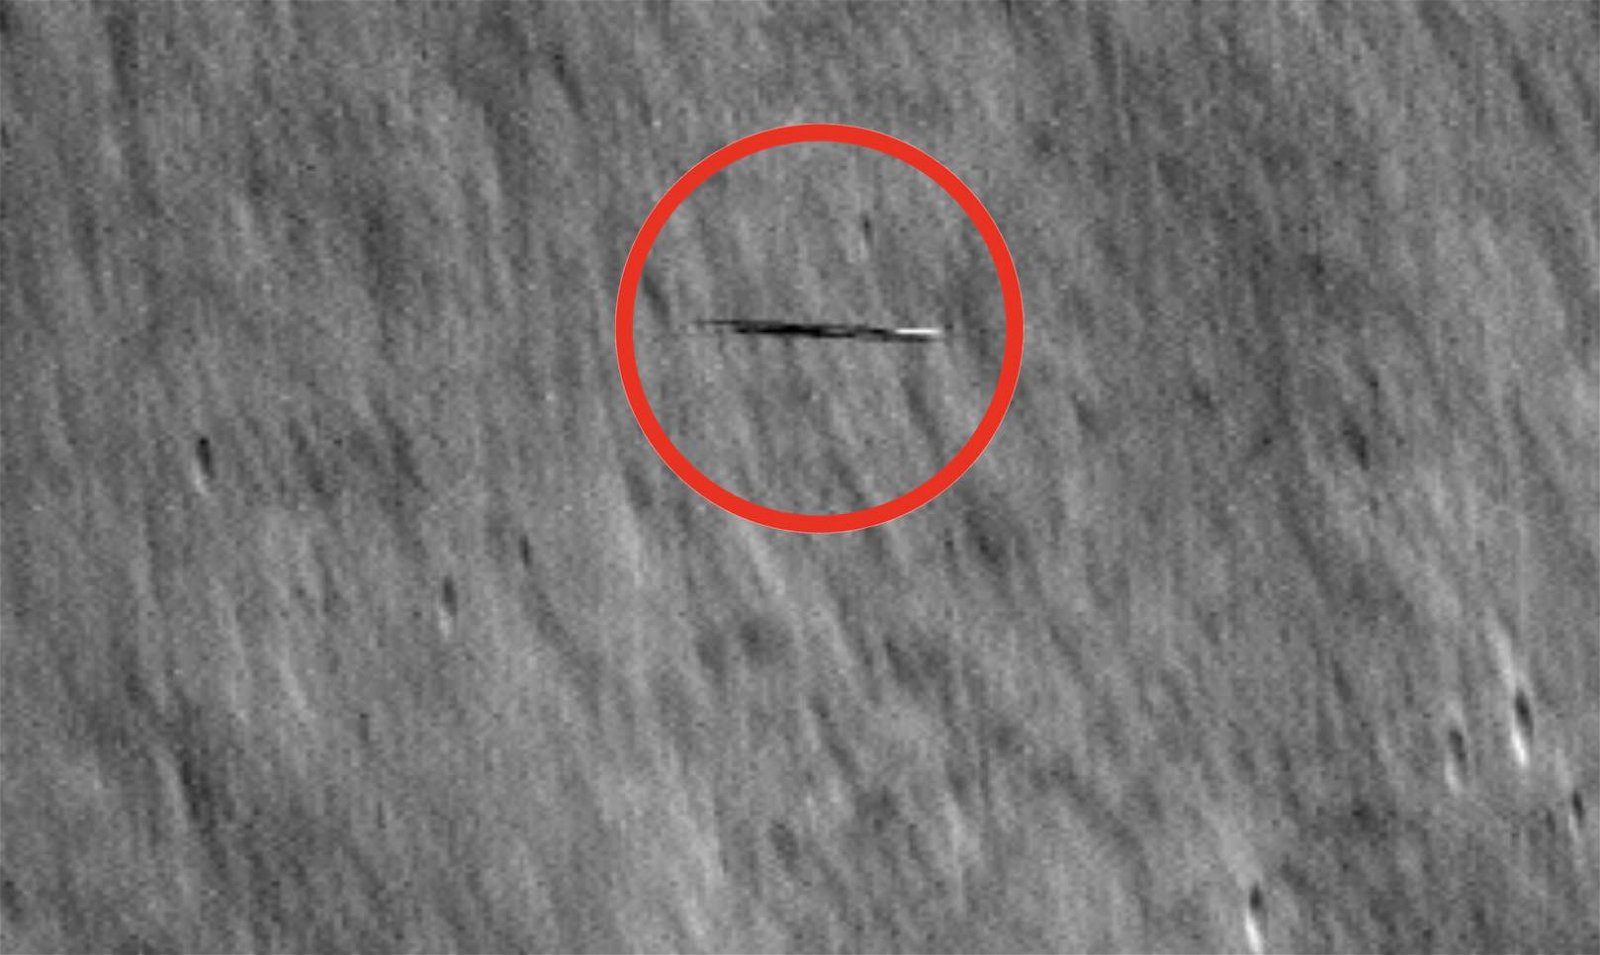 Mire lo que el Lunar Reconnaissance Orbiter de la NASA detectó acelerando en órbita alrededor de la Luna